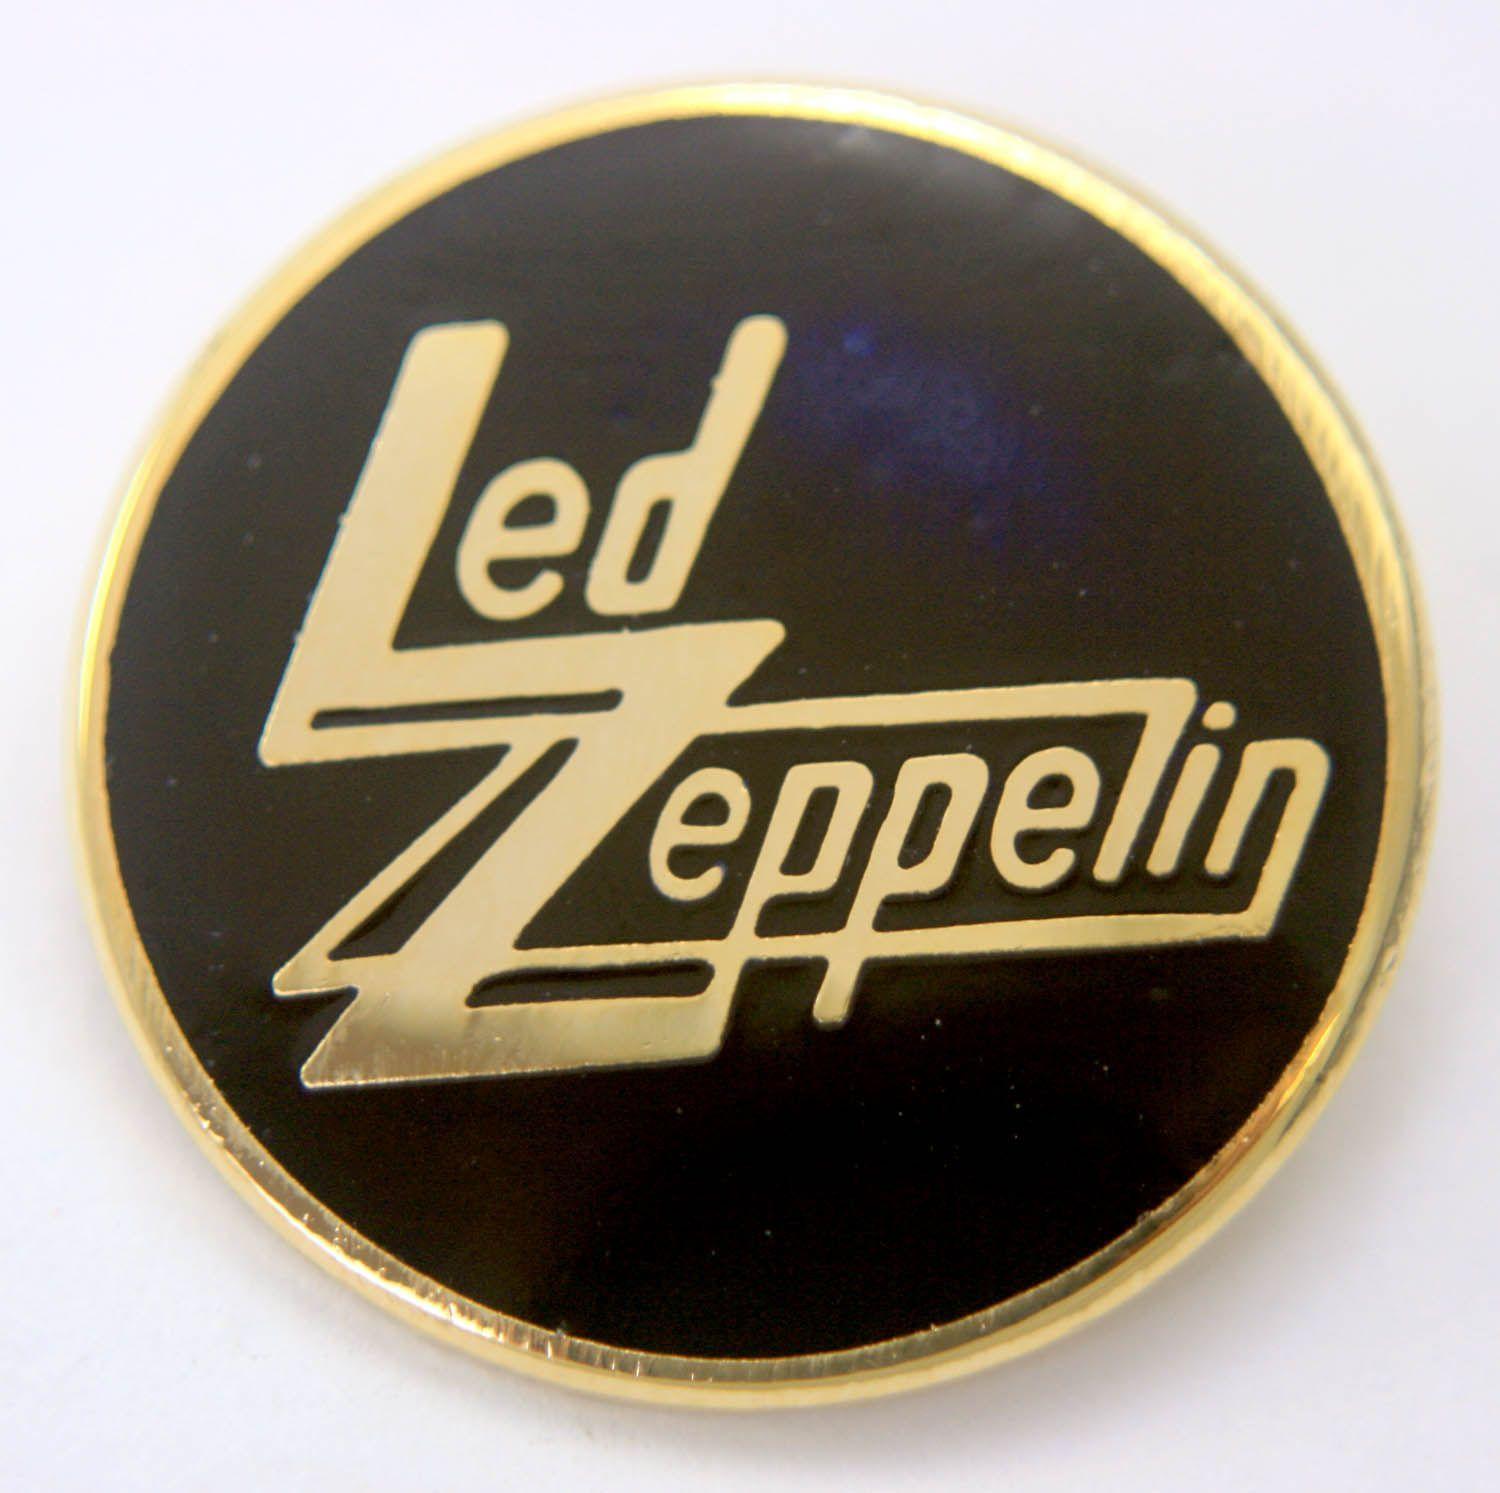 LED Zeppelin Logo - Led Zeppelin Round Enamel Badge